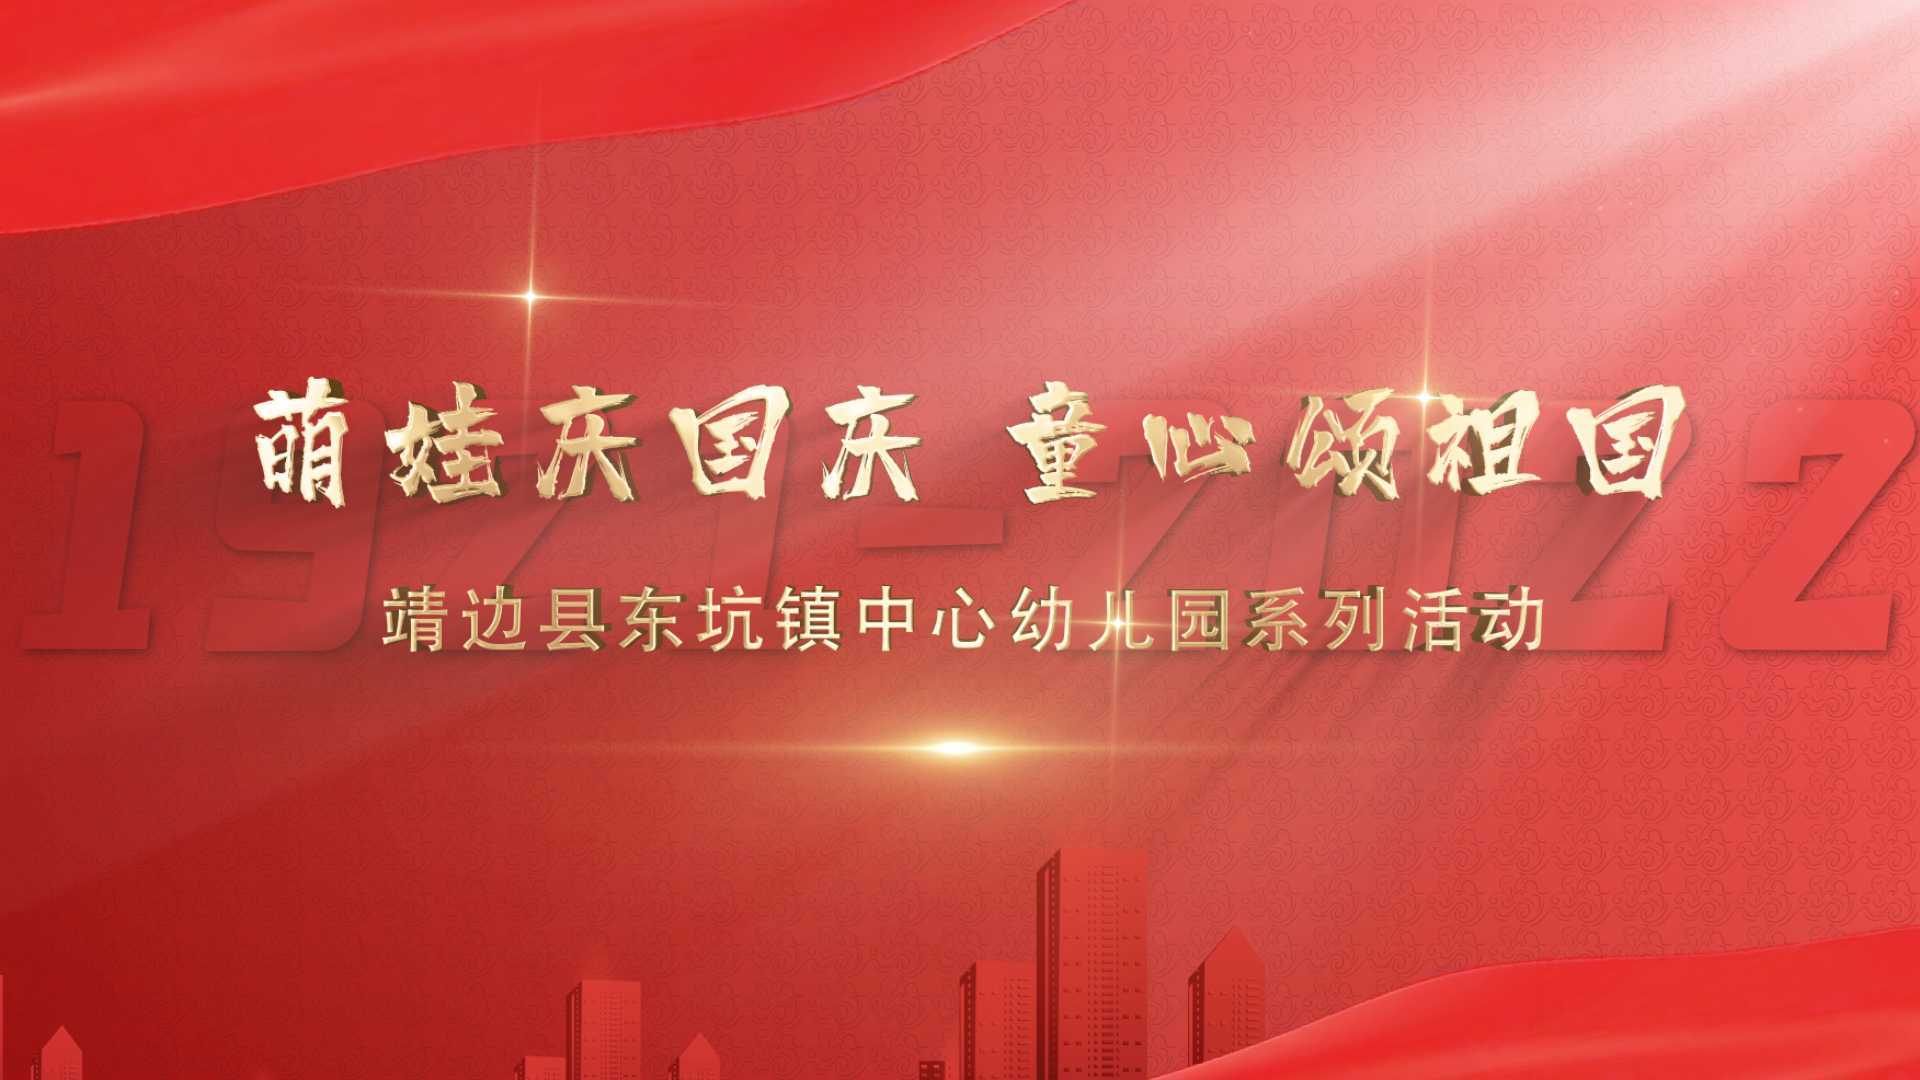 萌娃庆国庆 童心颂祖国  靖边县东坑镇中心幼儿园系列活动